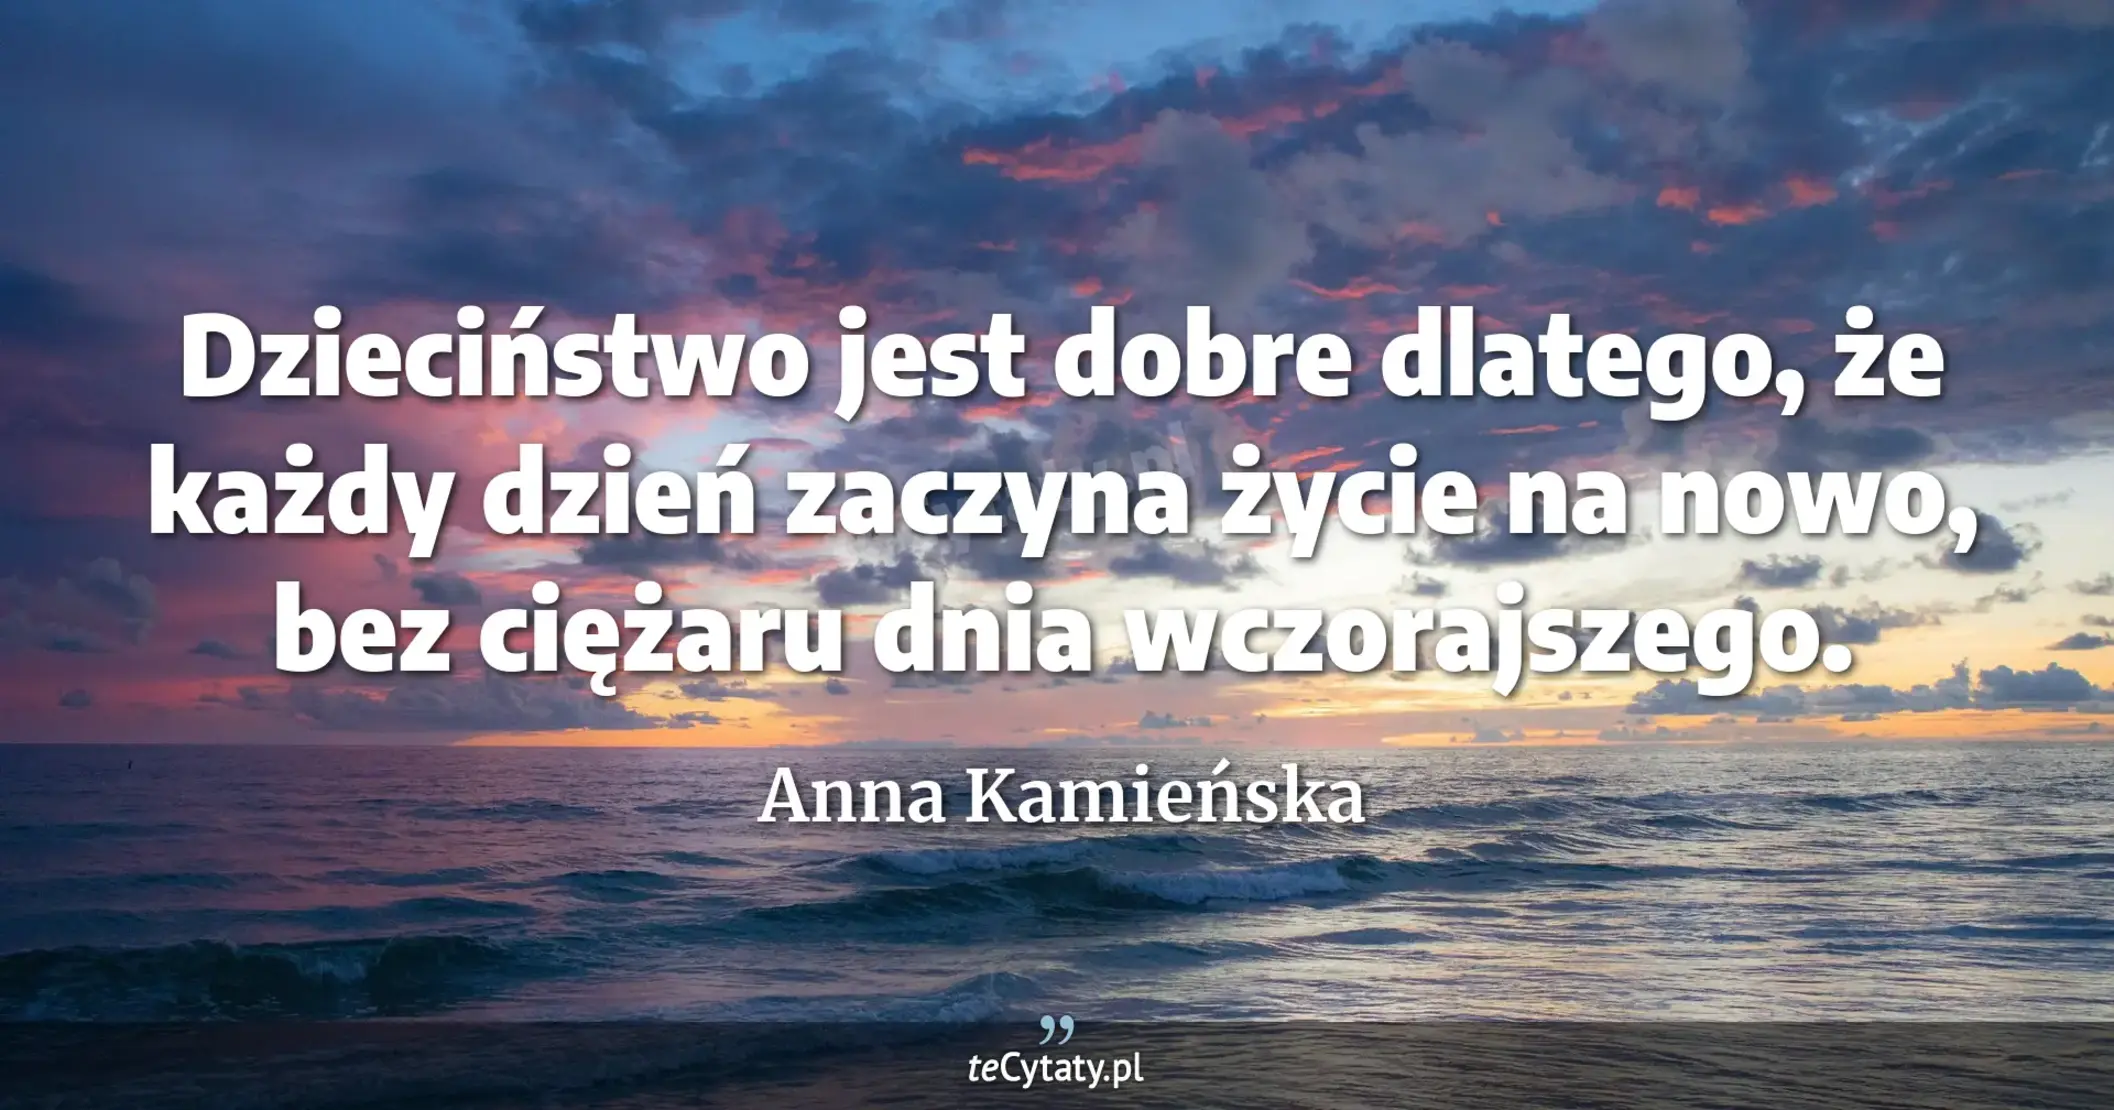 Dzieciństwo jest dobre dlatego, że każdy dzień zaczyna życie na nowo, bez ciężaru dnia wczorajszego. - Anna Kamieńska